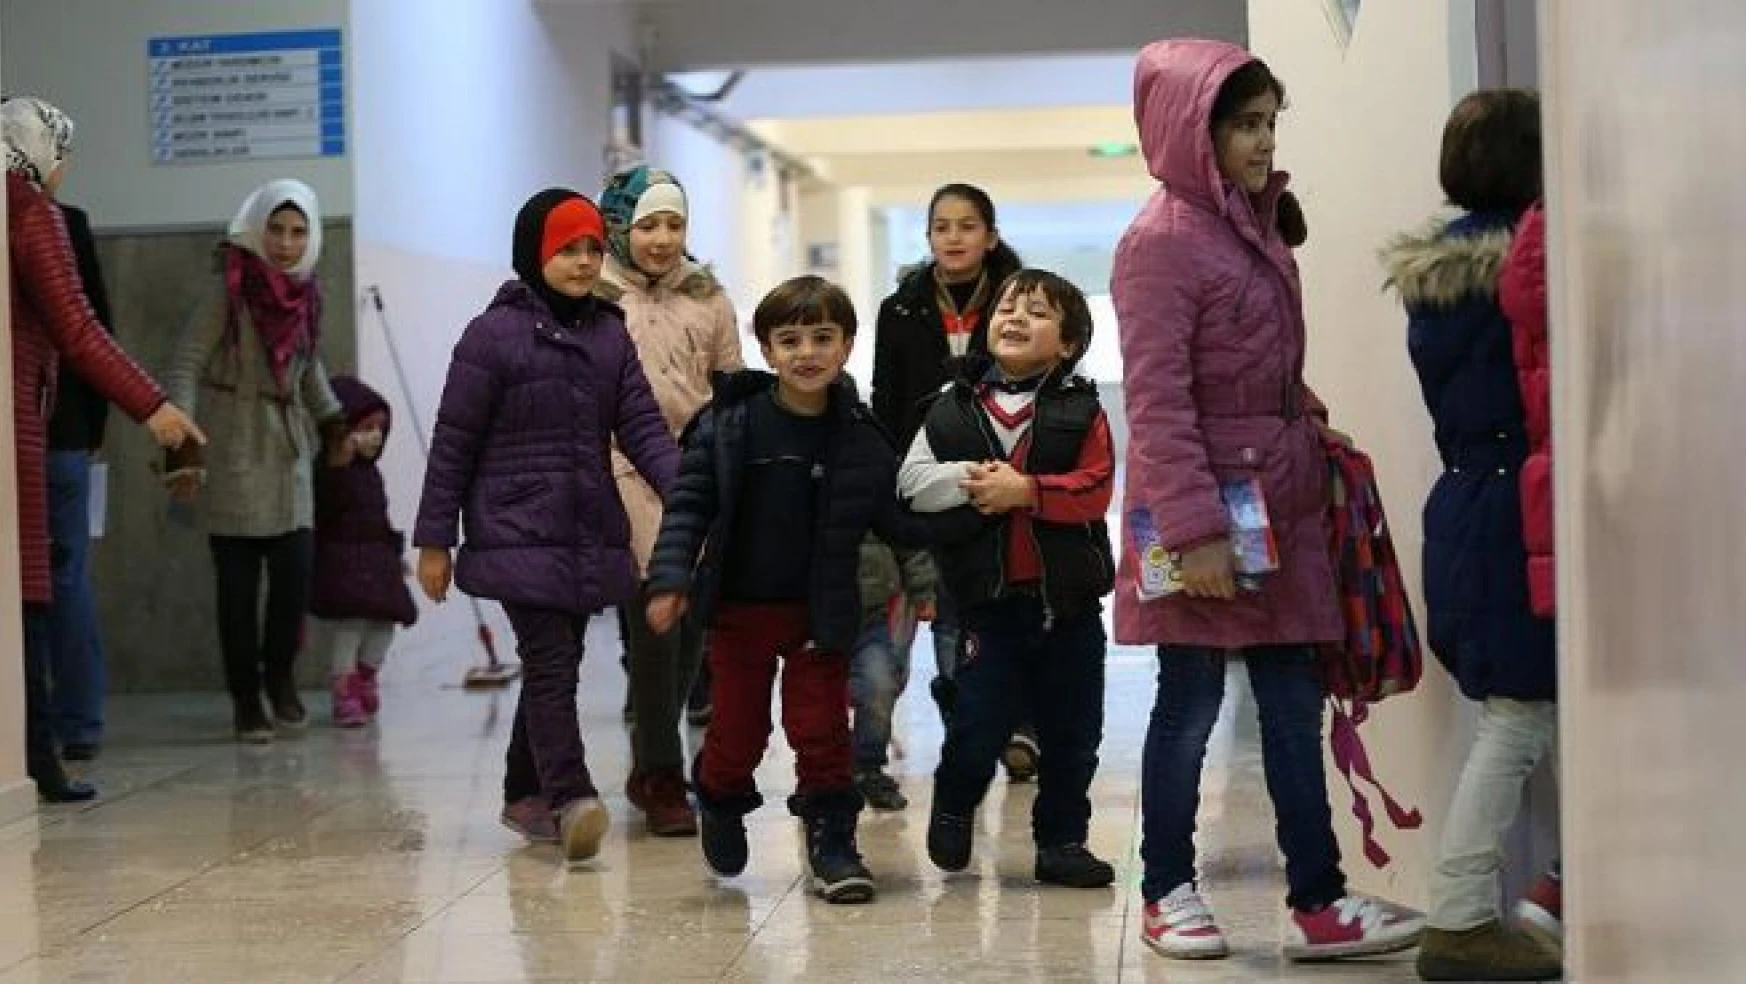 Ülkelerinde bulamadıkları eğitim fırsatını Türkiye'de buldular